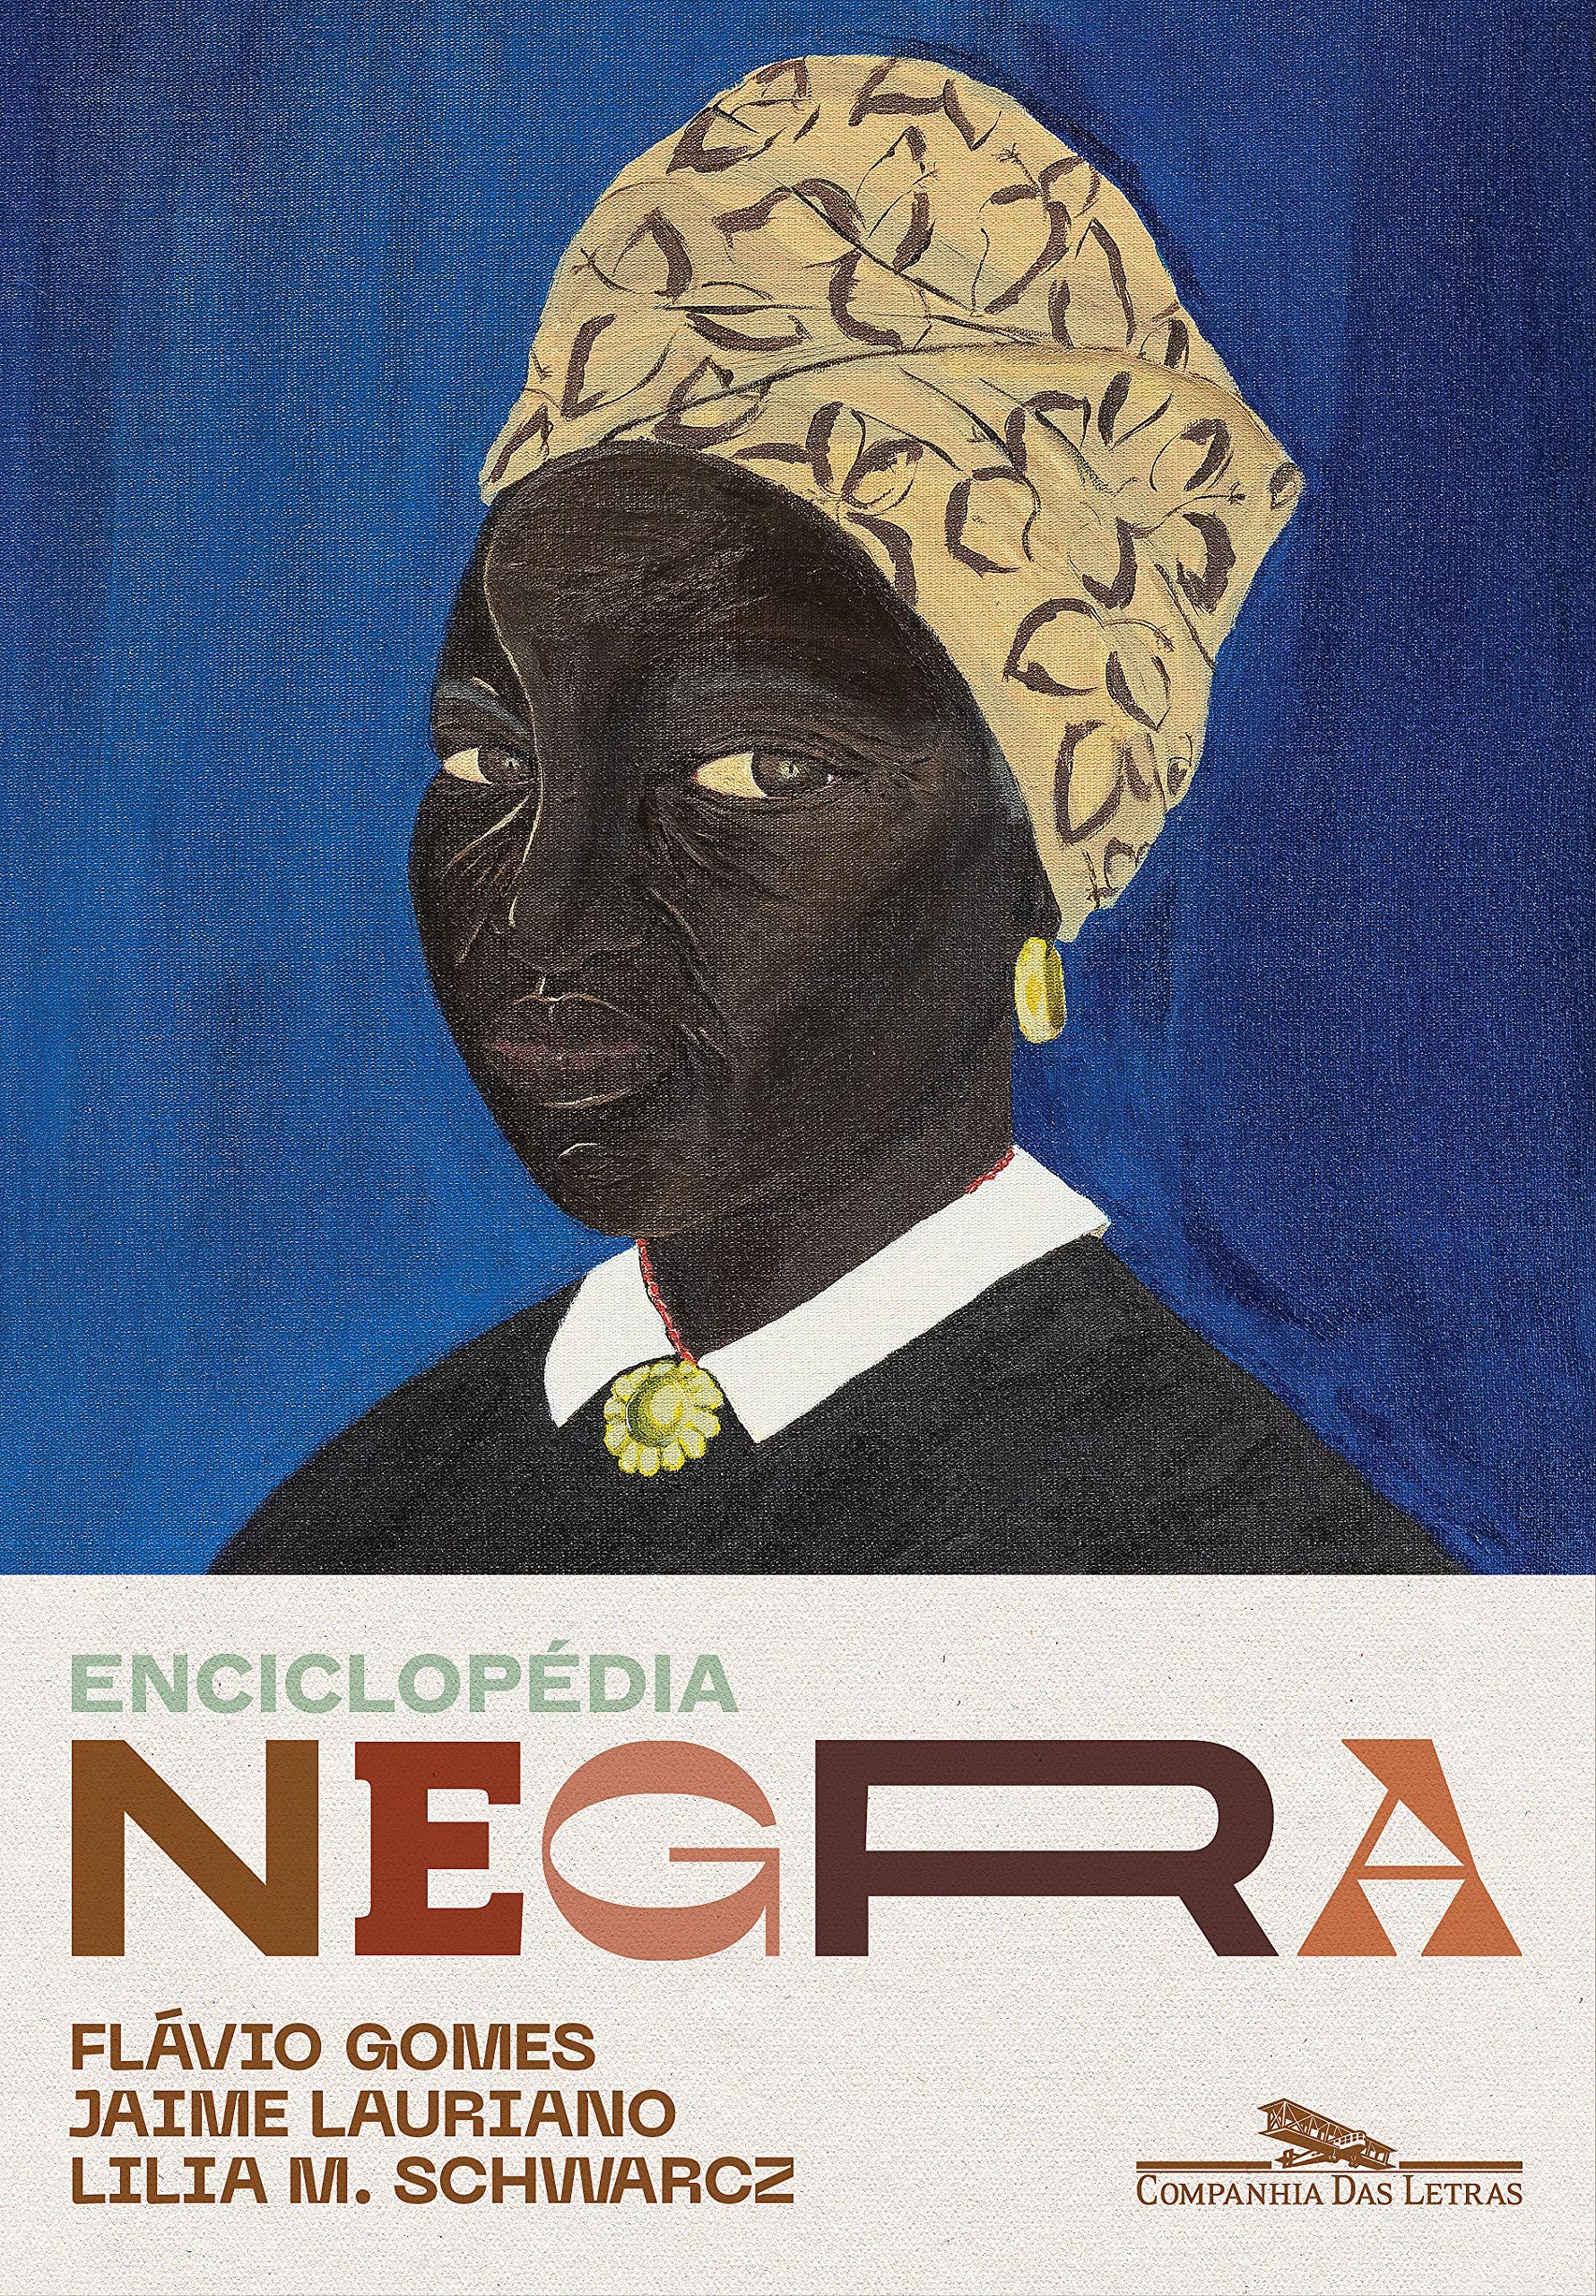 Livro Enciclopédia Negra relembra a história de personalidades negras esquecidas pela história (Foto: Reprodução/Amazon)